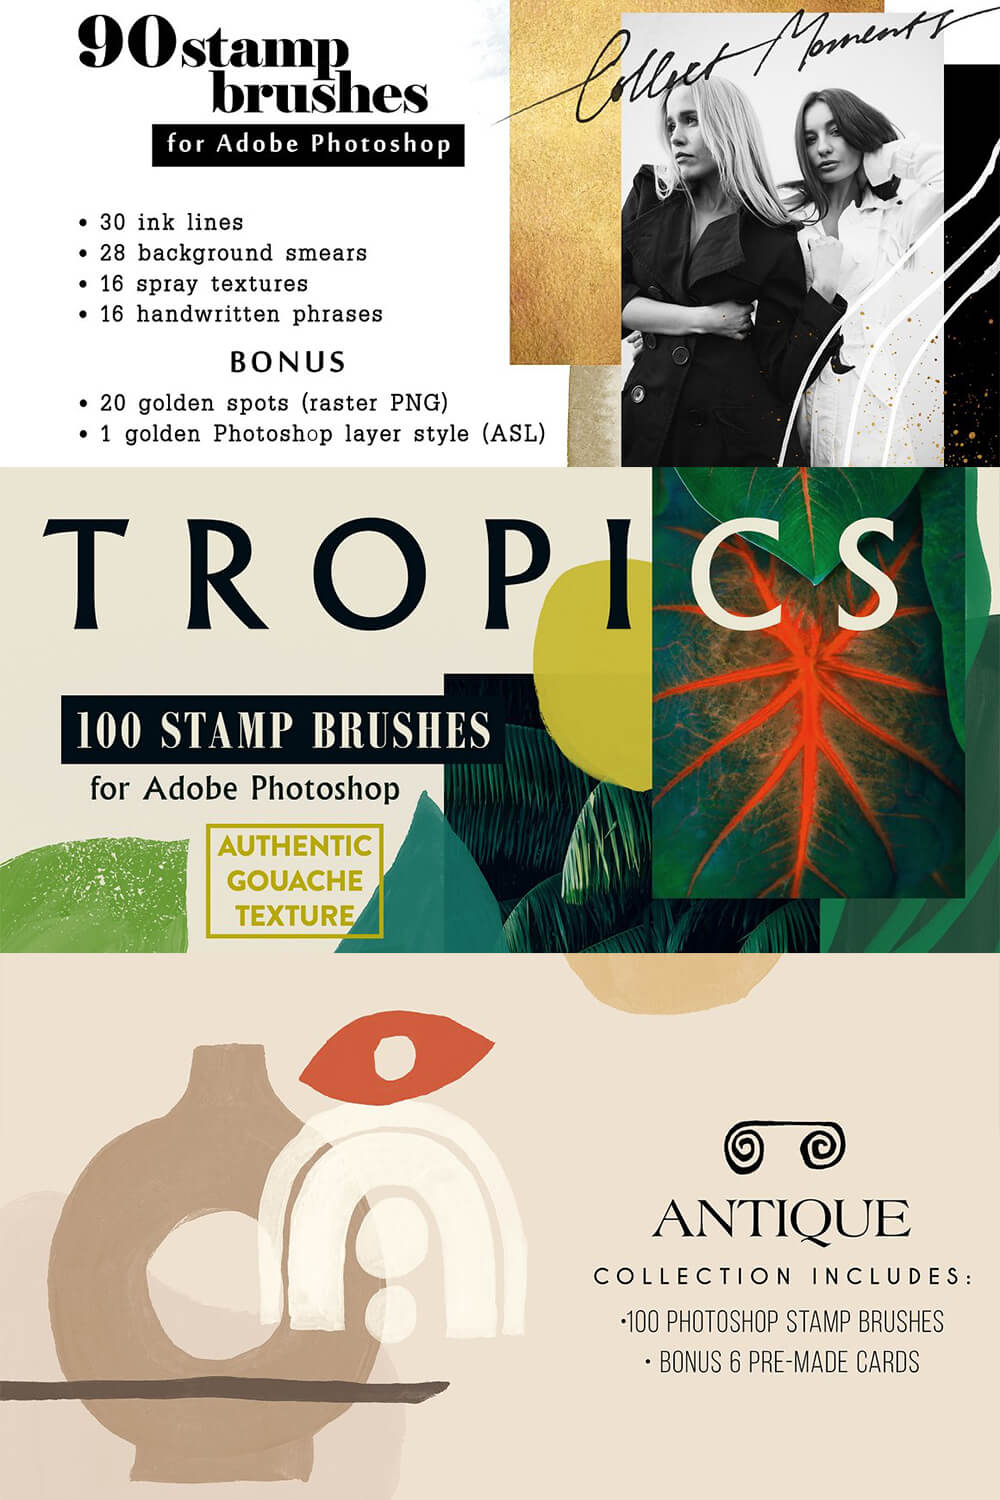 Tropics and Antique.